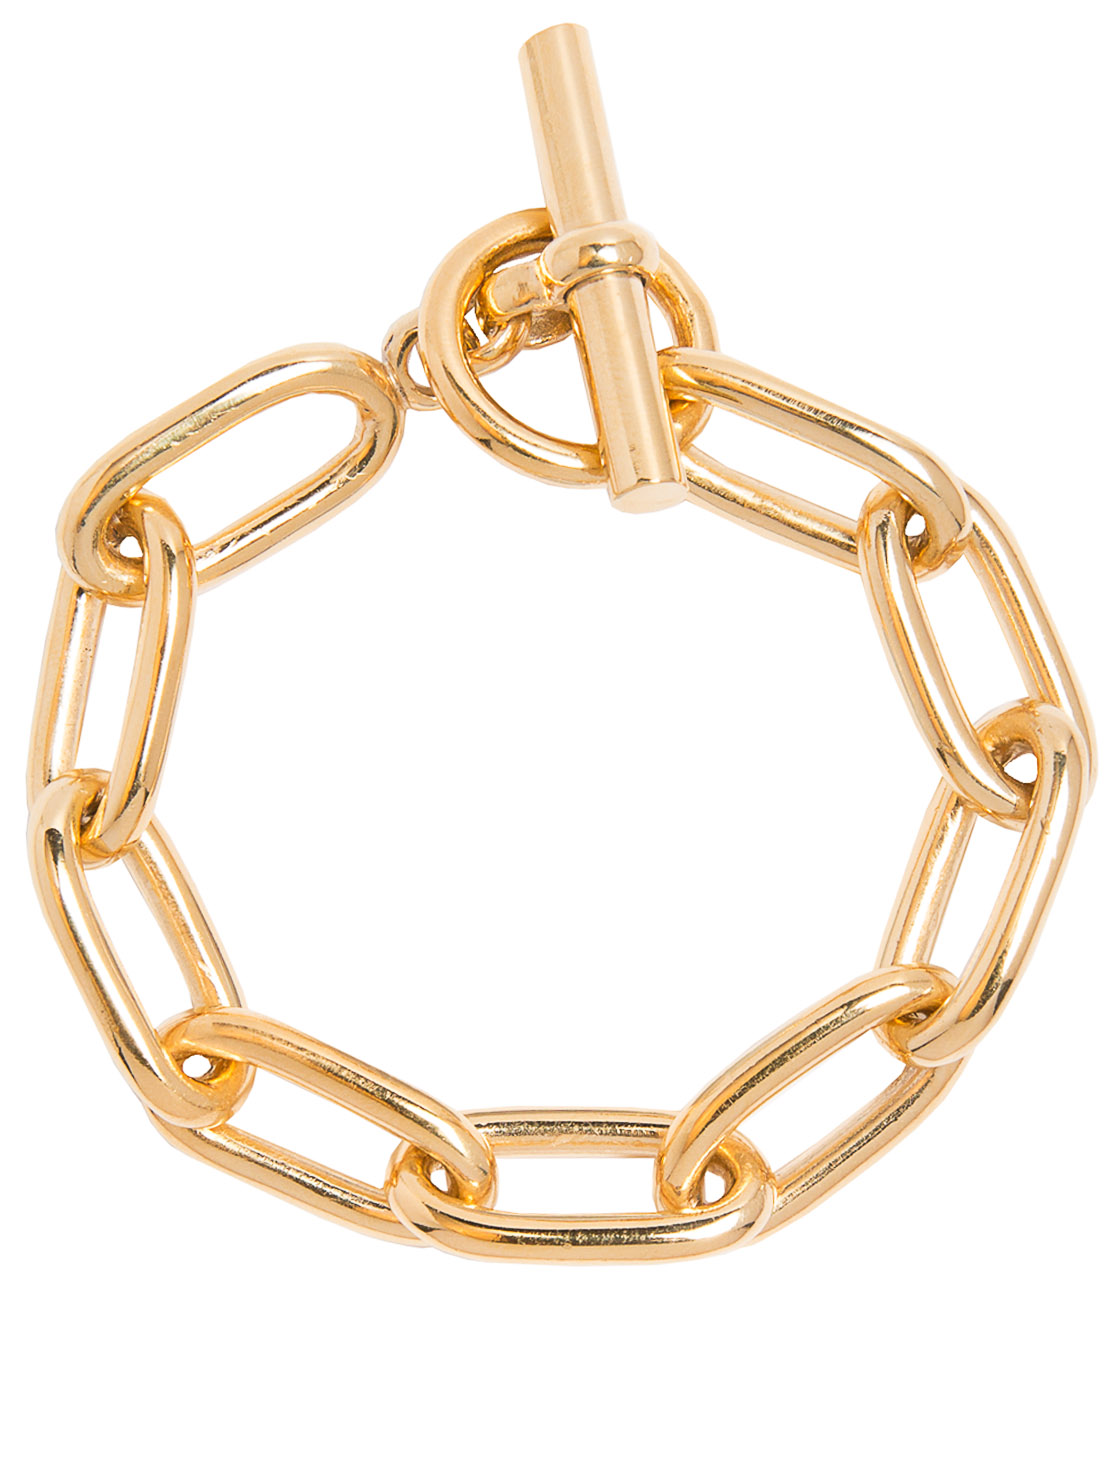 Medium Gold Oval Linked Bracelet Gold